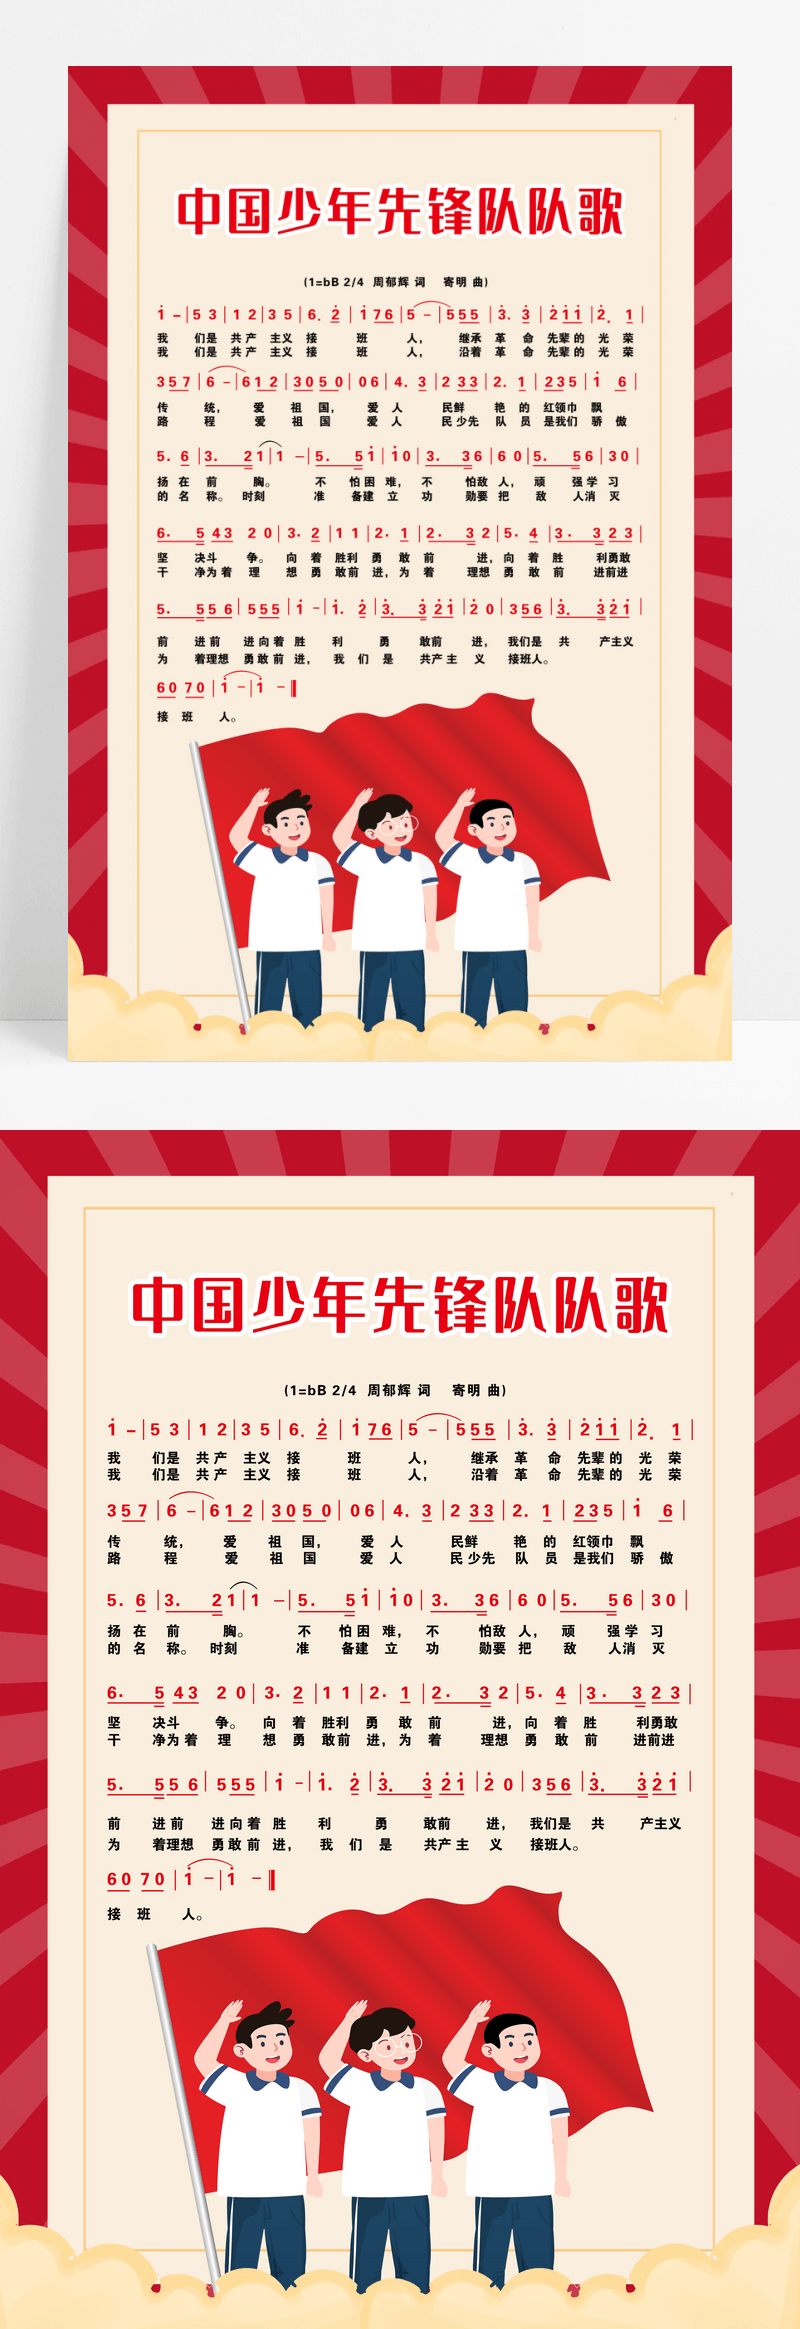 红色少年先锋队队歌少年队队歌海报设计